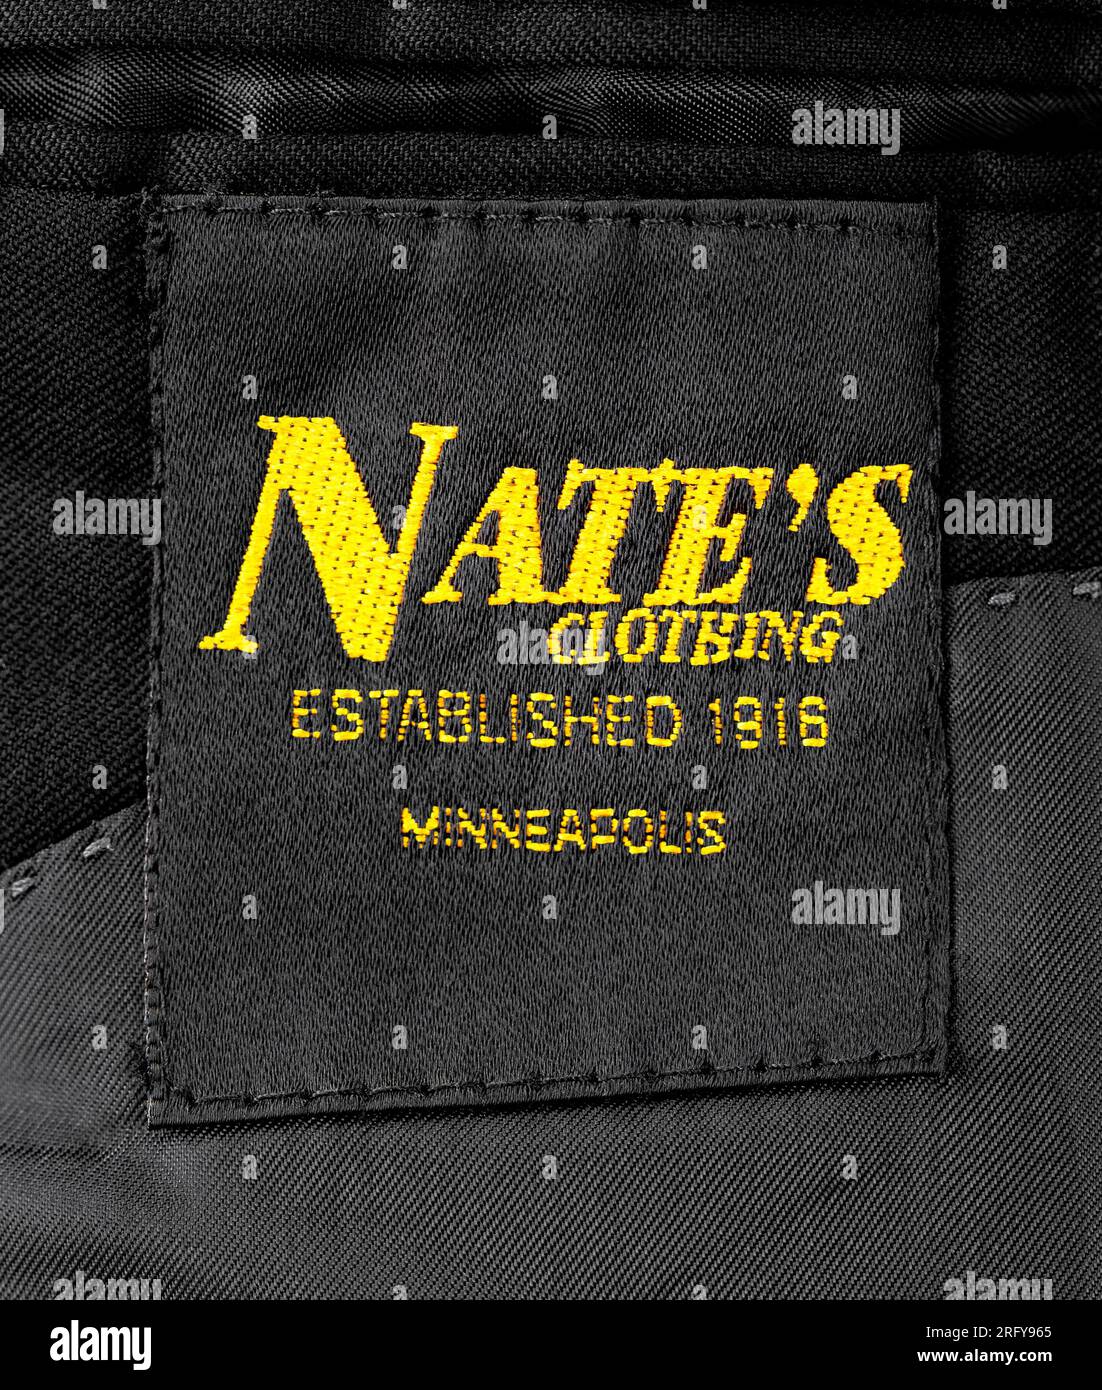 Étiquette Nate’s Clothing cousue à l’intérieur d’un manteau de costume en laine noire sur mesure. Nate's était une entreprise familiale de Minneapolis fondée par Nathan Witebsky en 1916. Banque D'Images